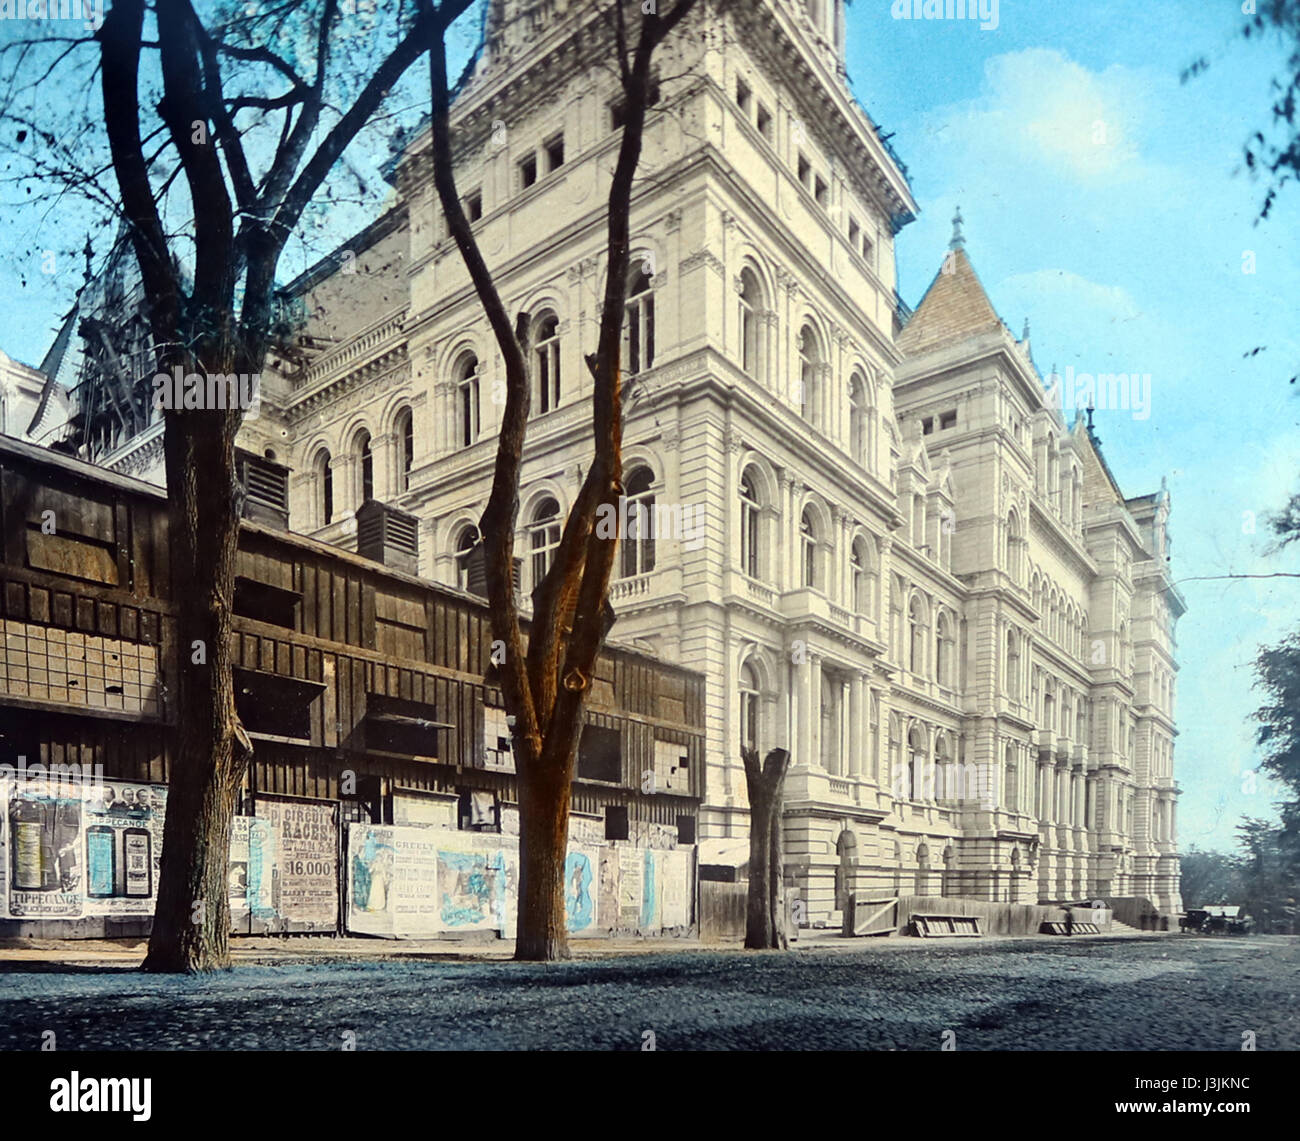 Le bâtiment du Capitole, Albany, New York - main photo colorée - période victorienne Banque D'Images